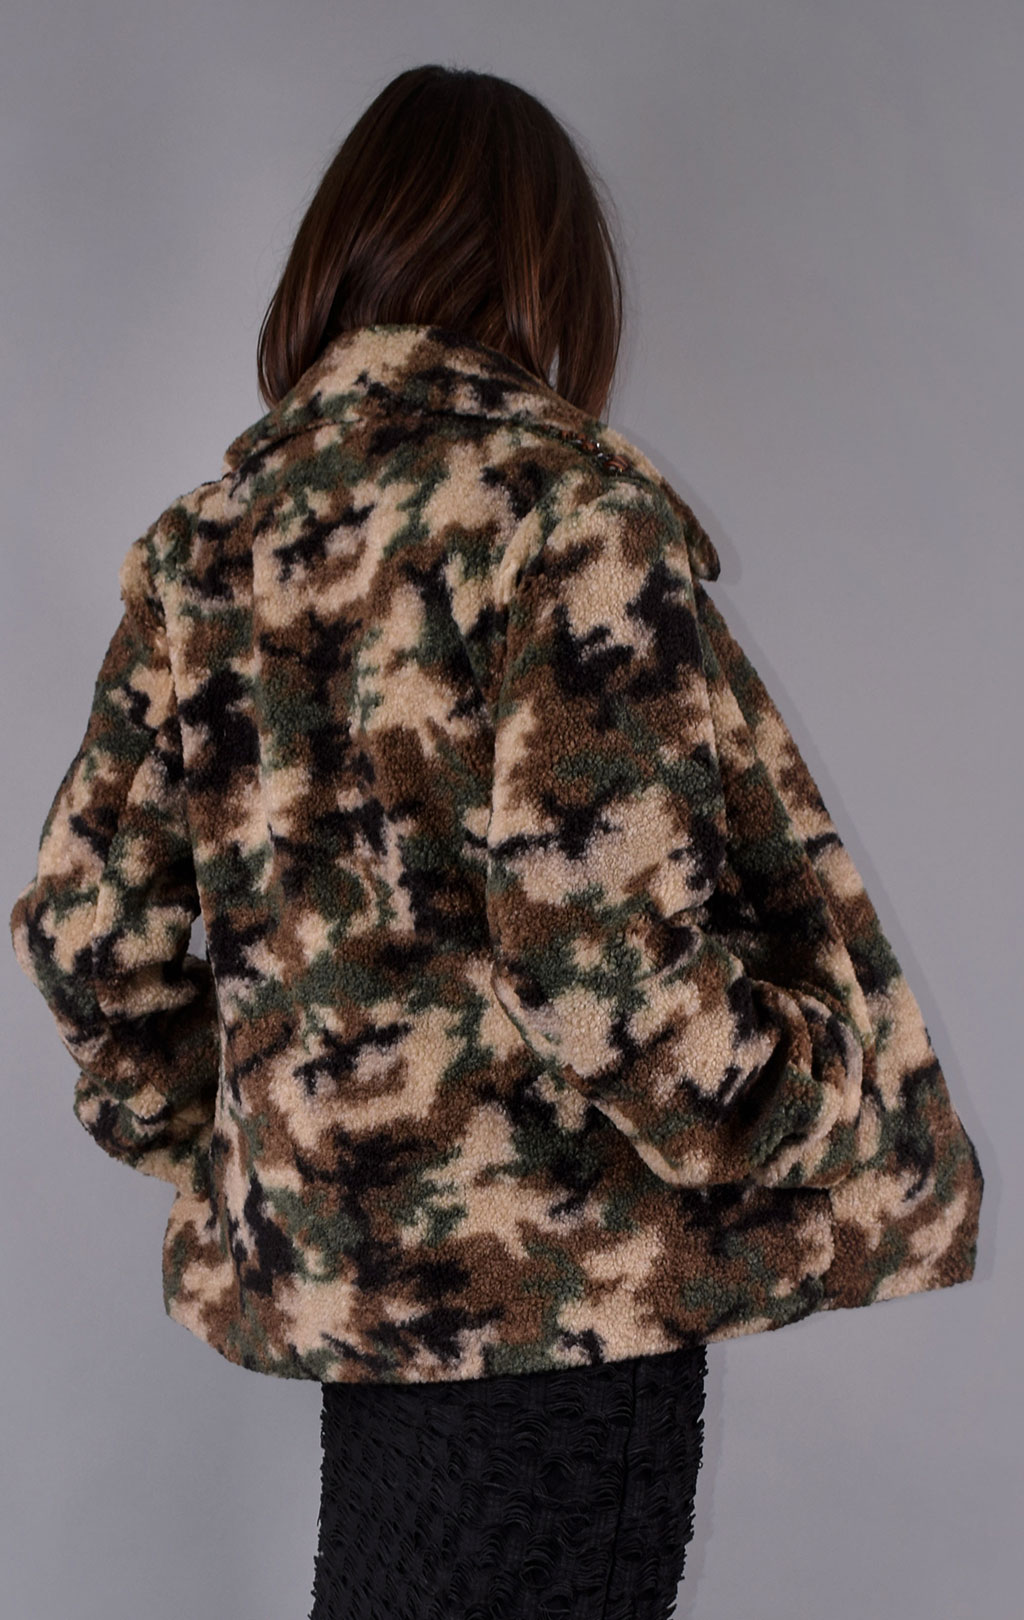 Женская куртка AERONAUTICA MILITARE FW 19/20 camouflage (AB 1820) 